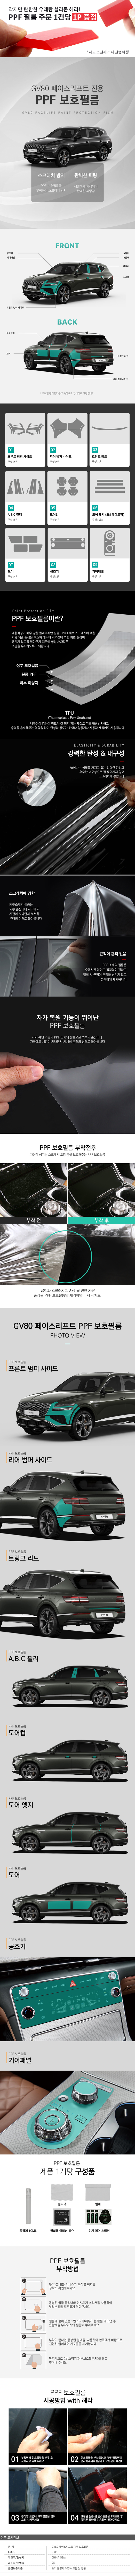 02_gv80_facelift_ppf_film_231212.jpg